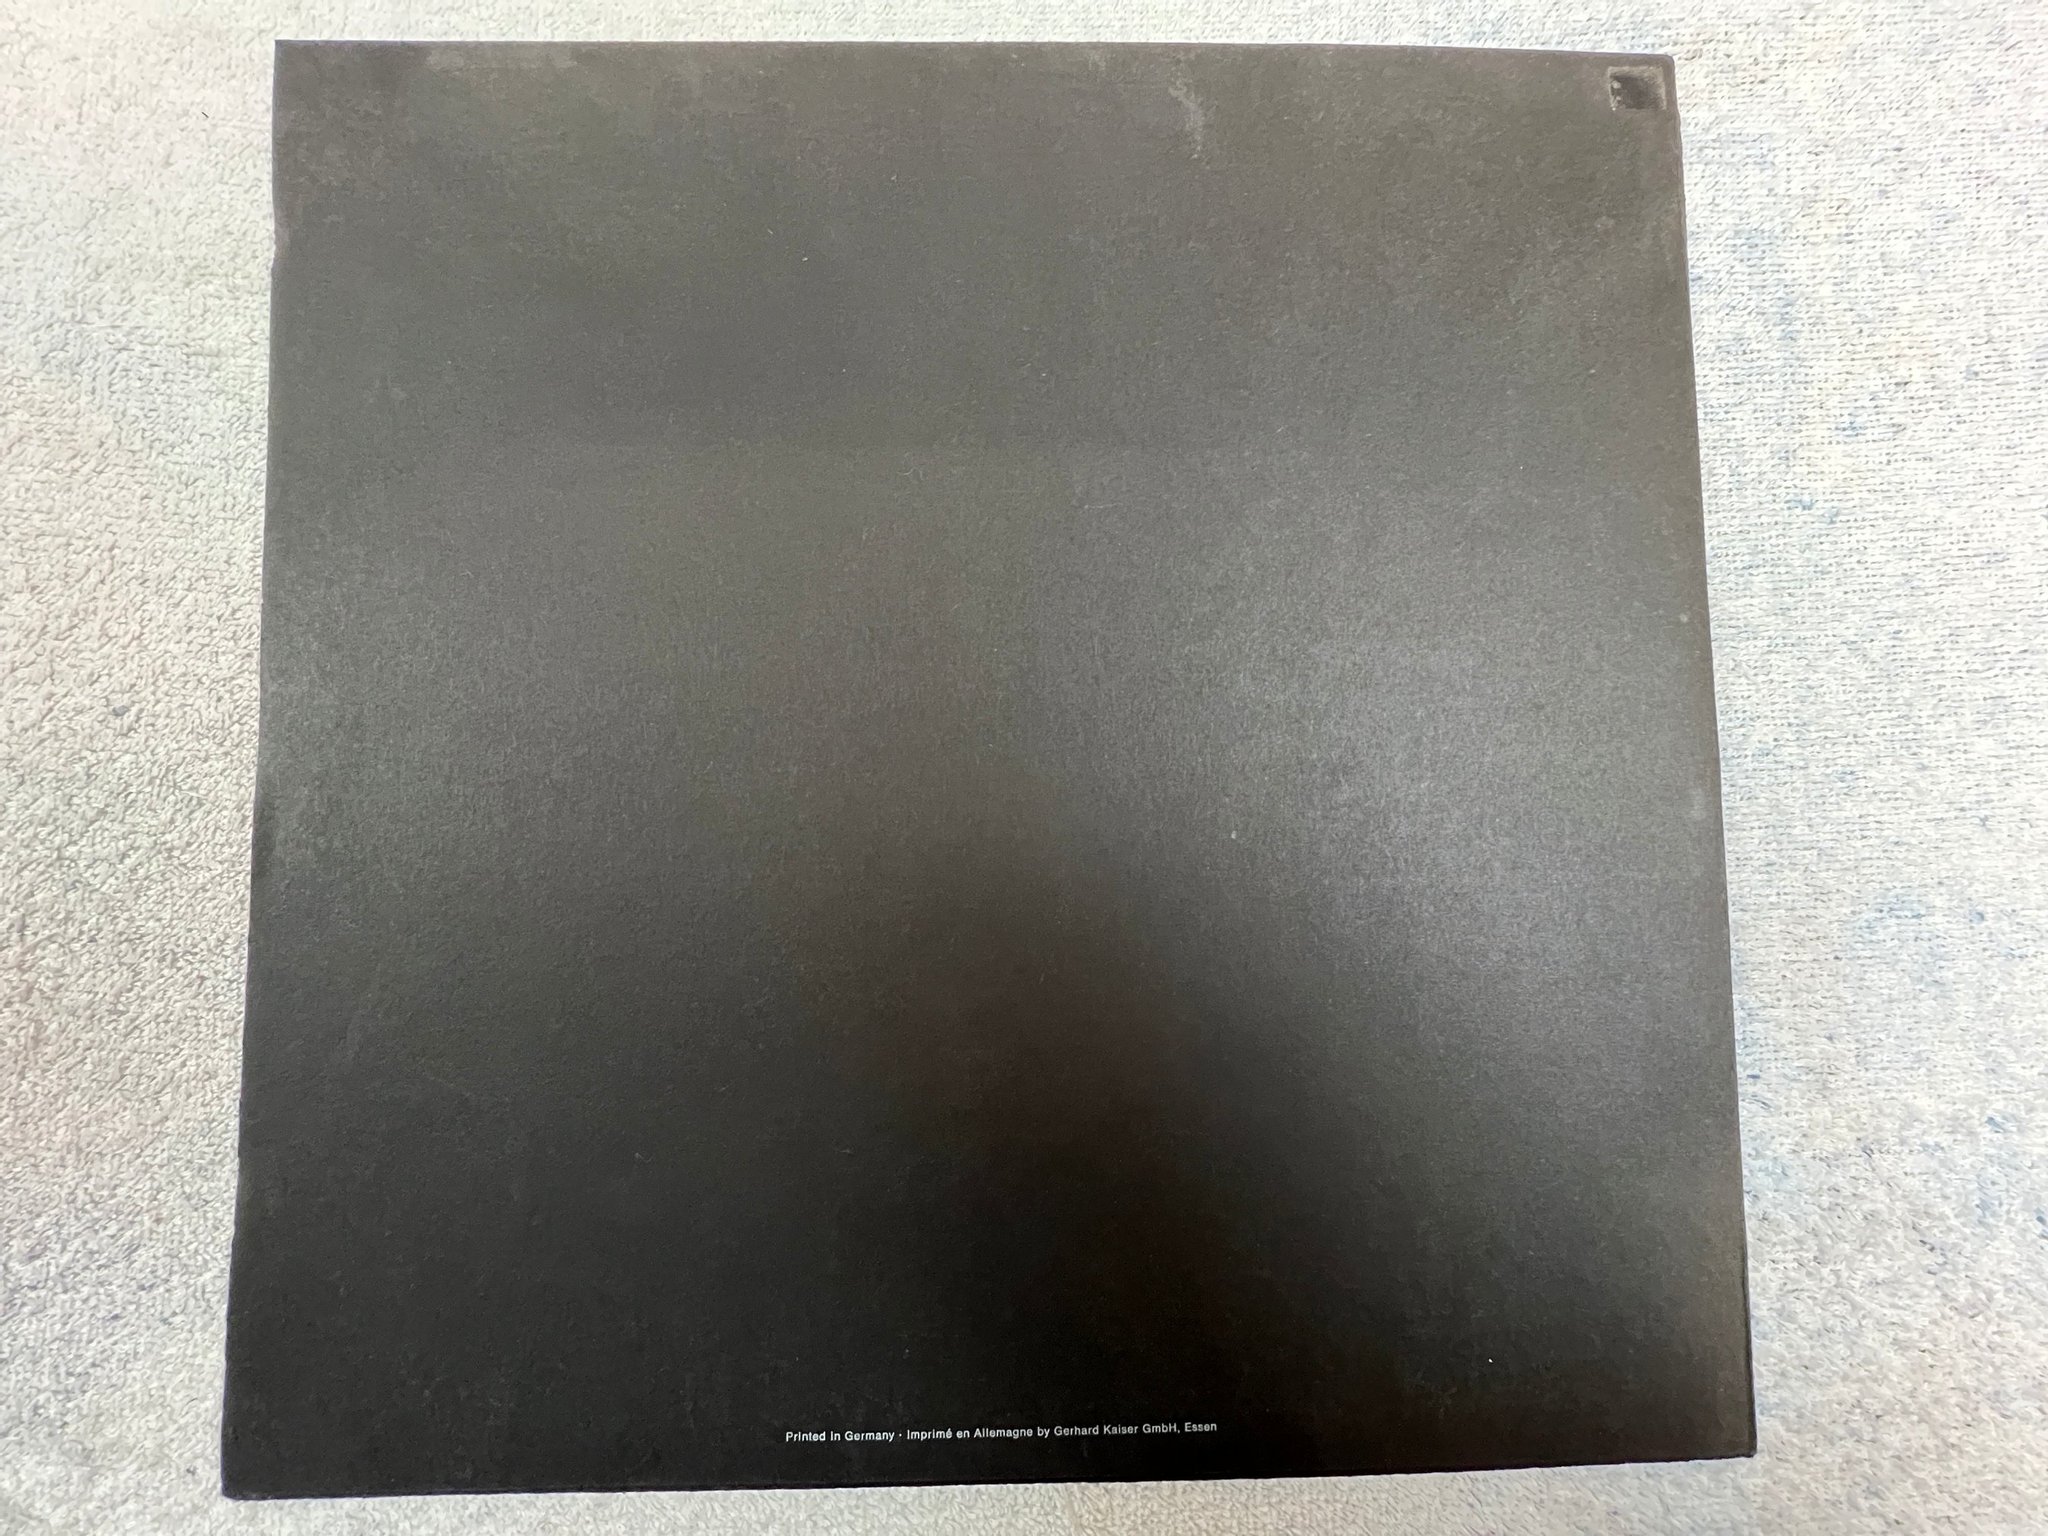 Omslagsbild för skivan FAUST so far LP -72 Ger POLYDOR 2310 196 krautrock w/ booklet